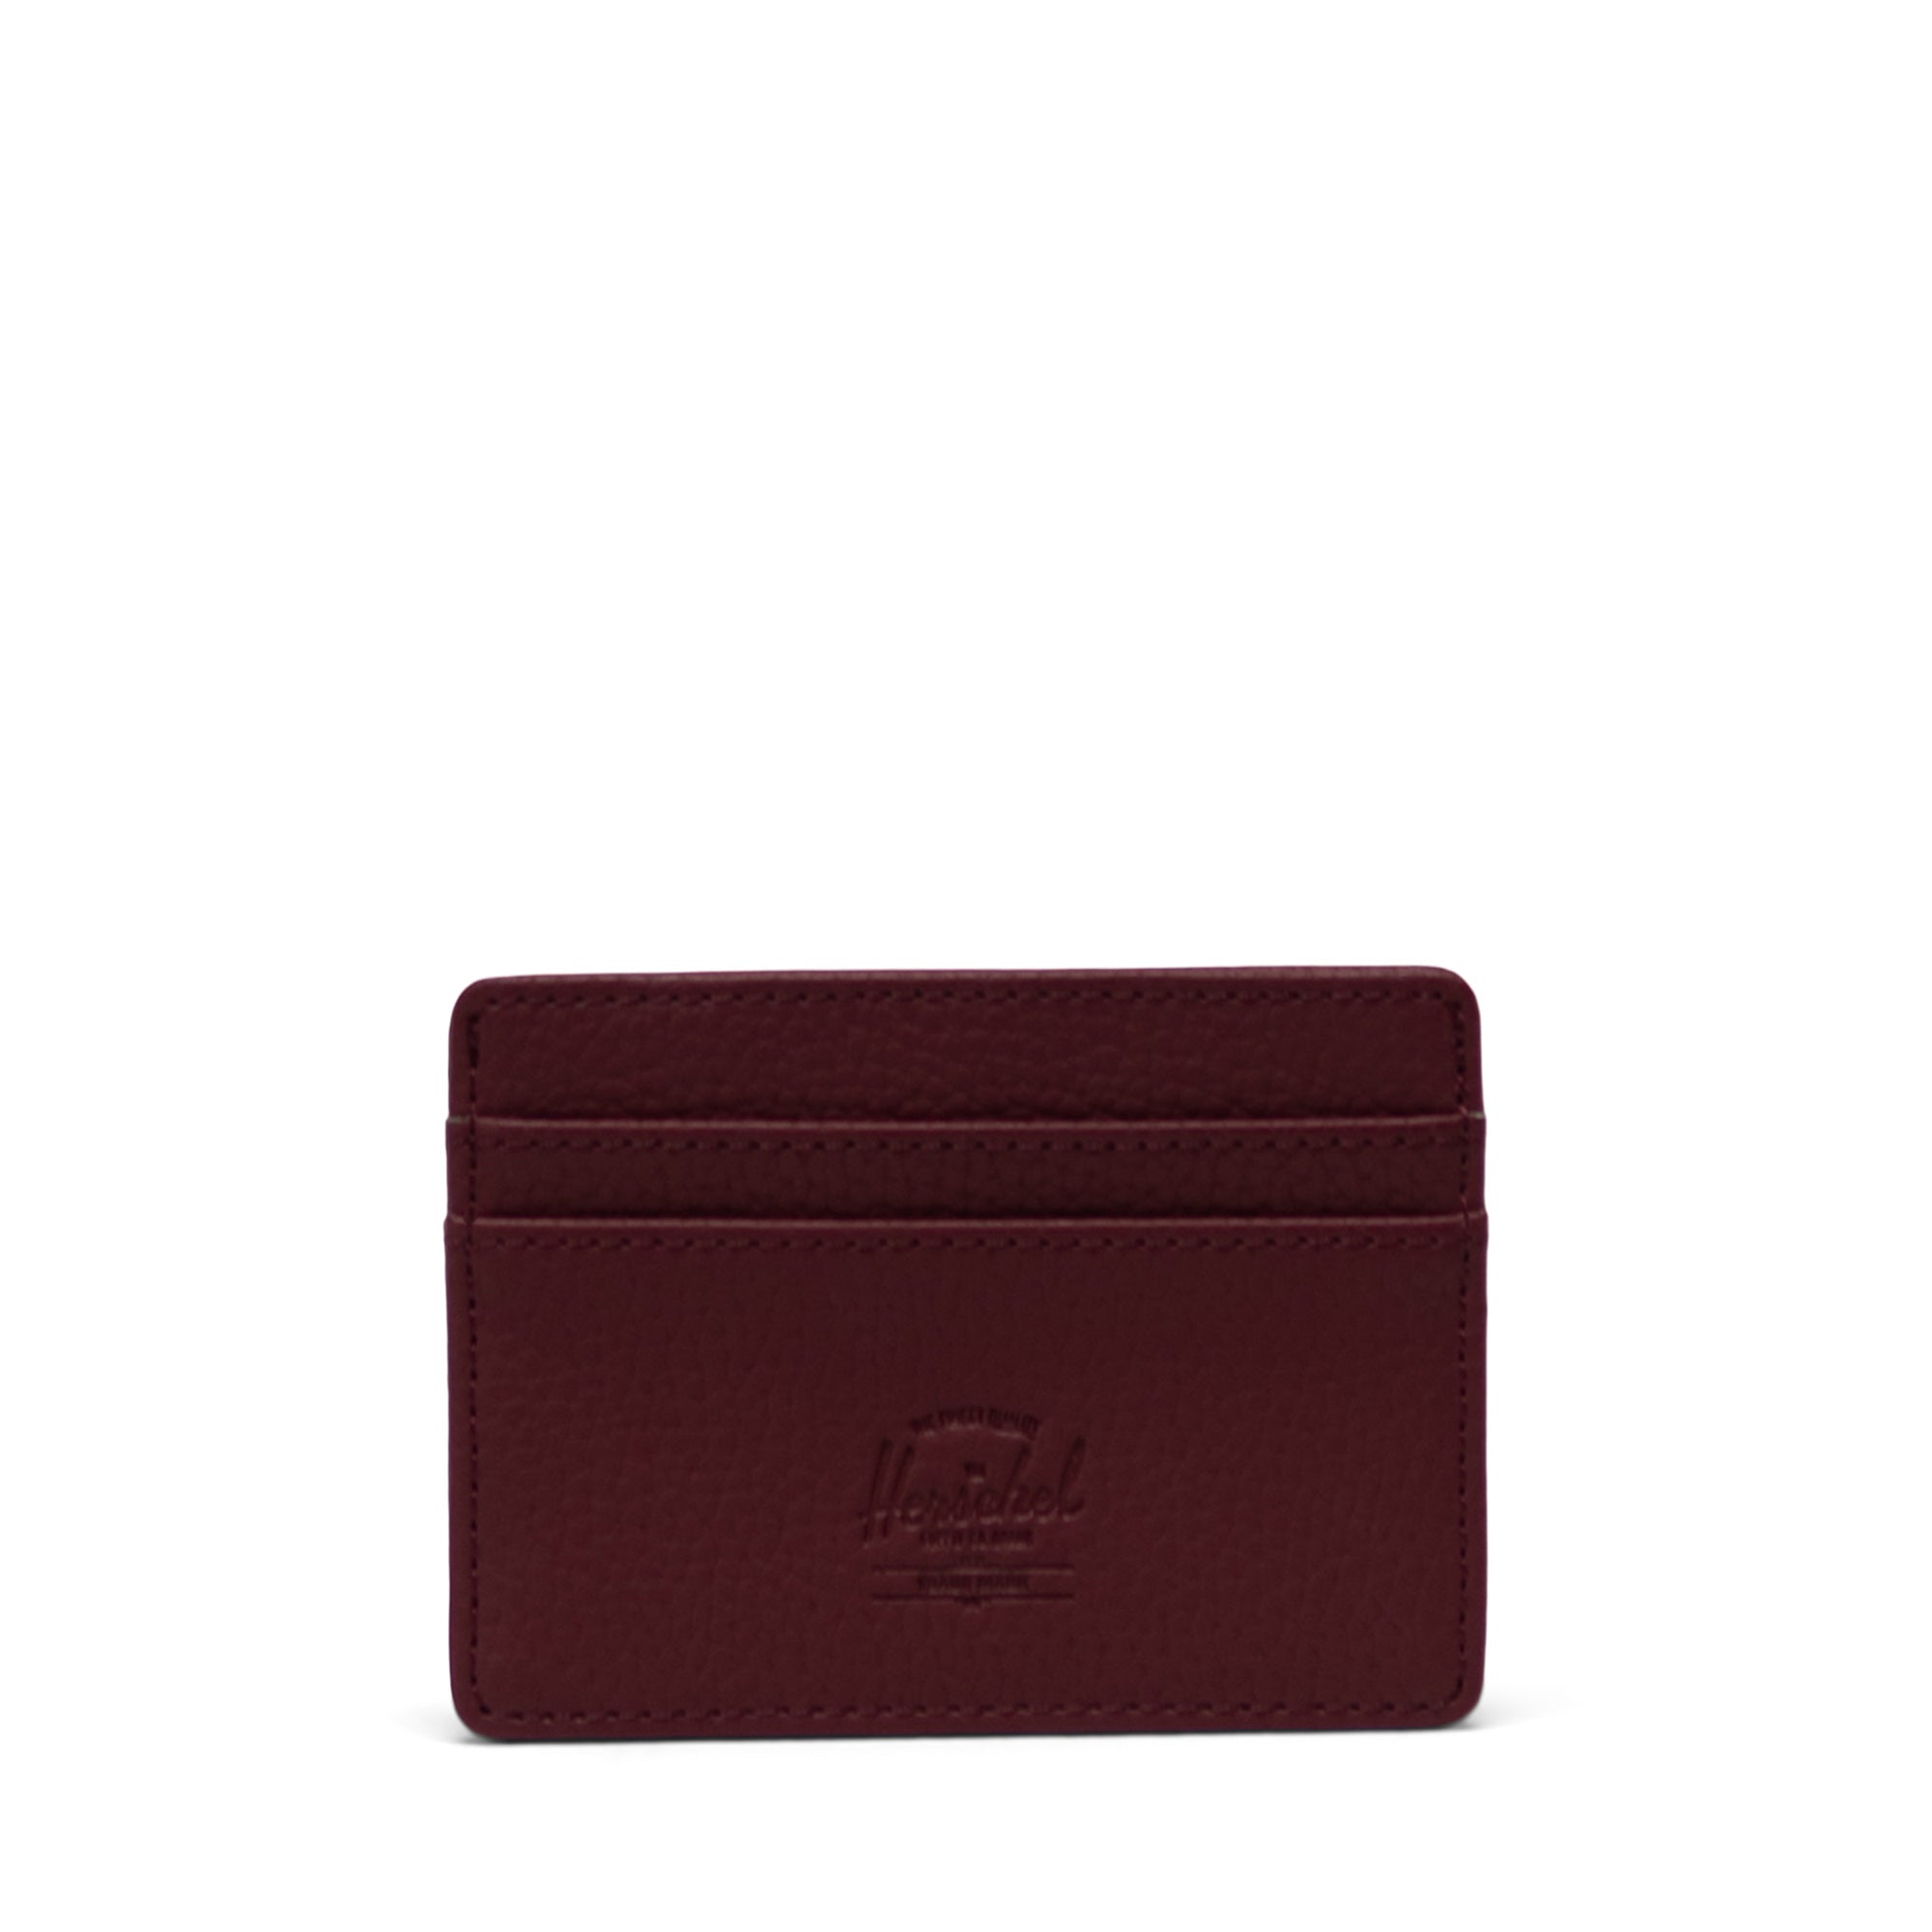 Charlie Vegan Leather Cardholder Wallet